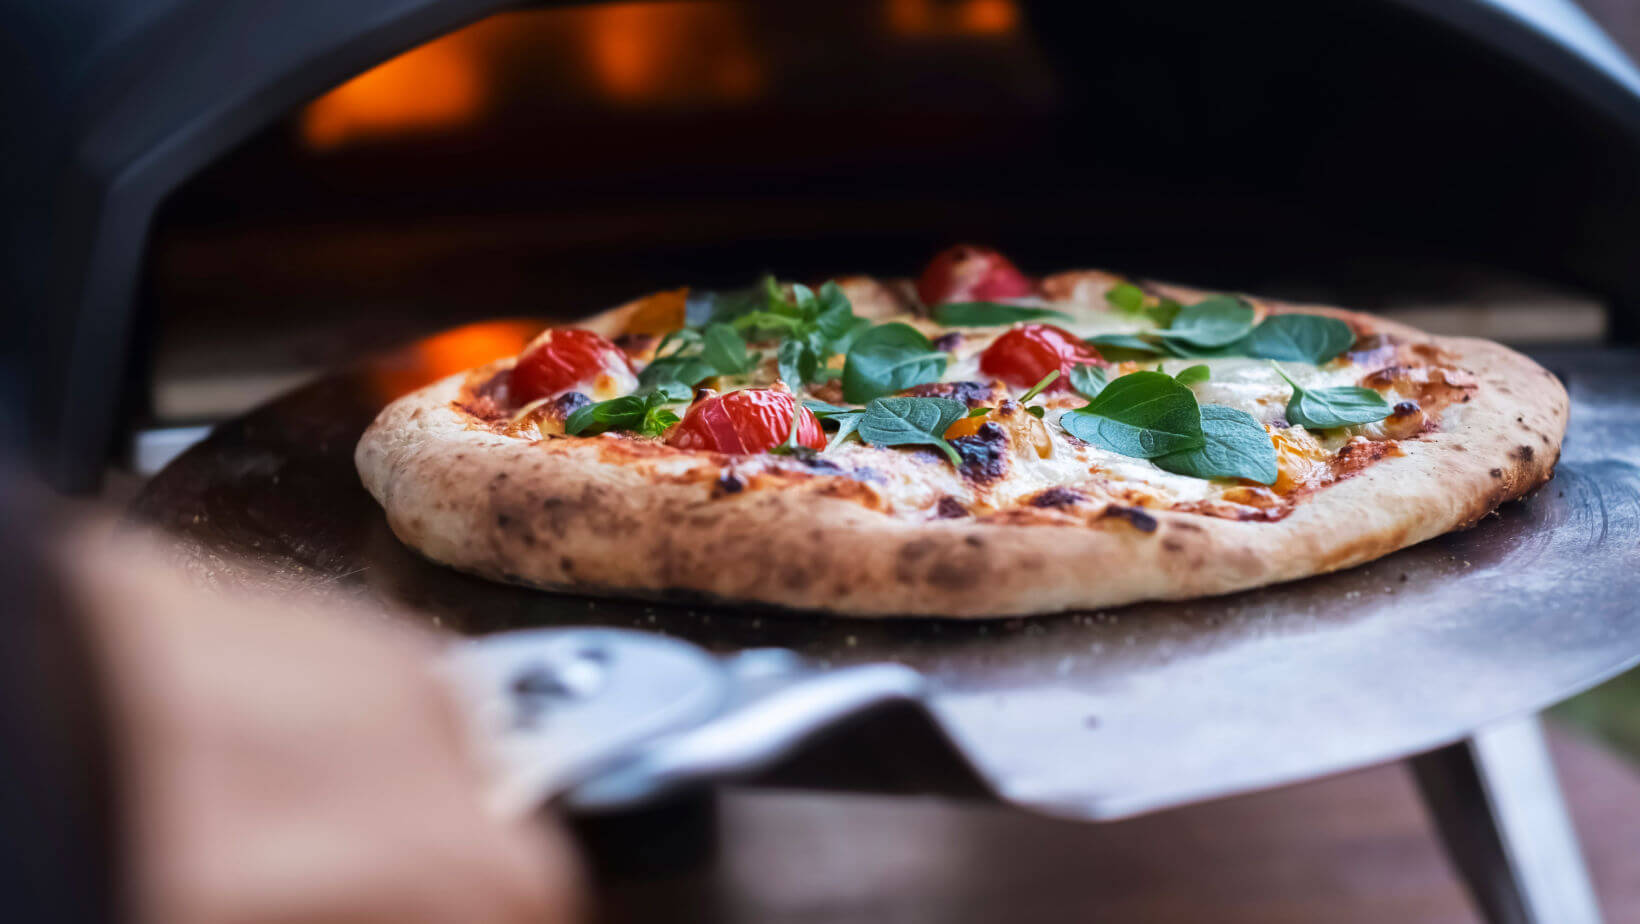 Fabio's Pizza on X: Featuring Pizza Siciliana!